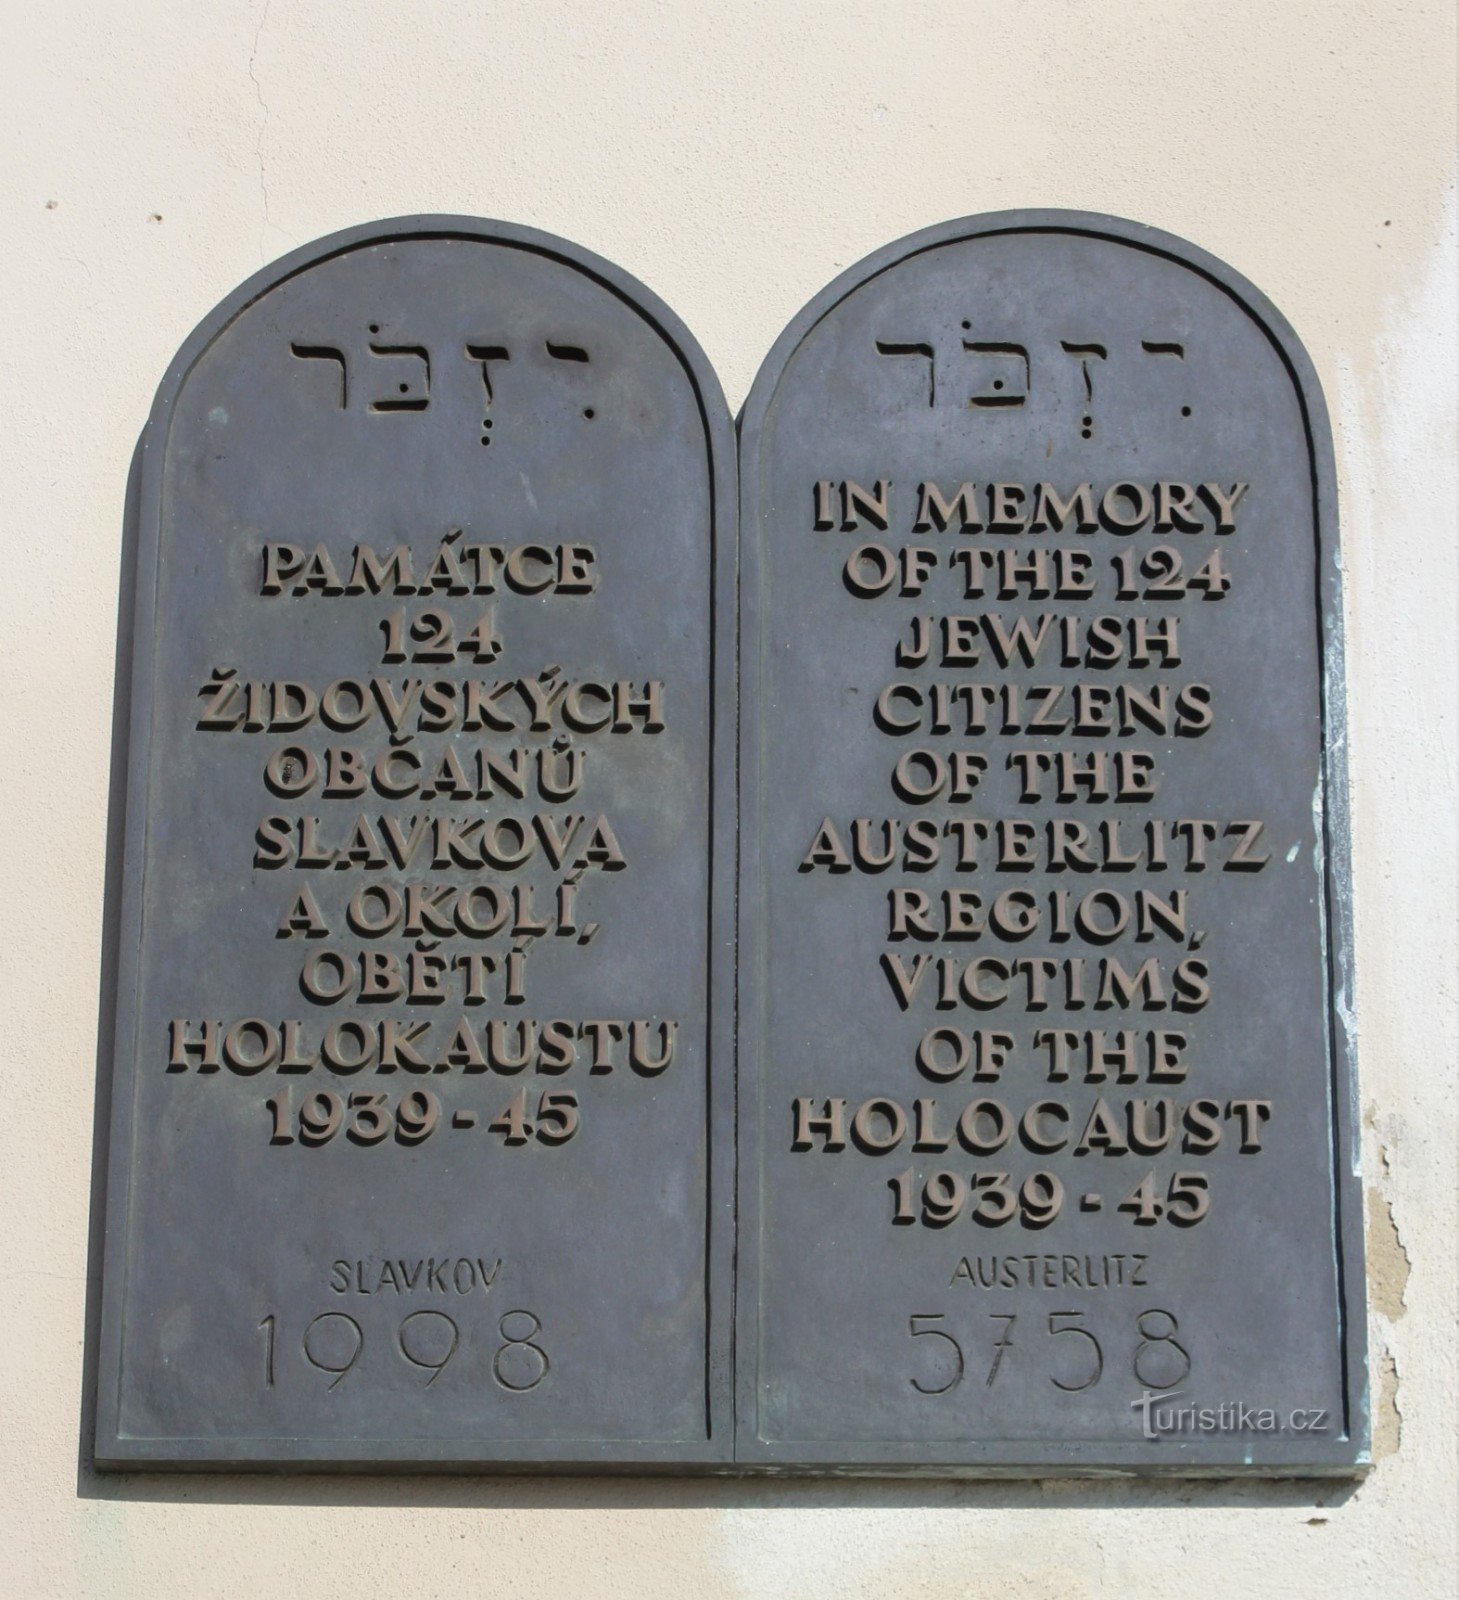 Slavkov lähellä Brnon synagogaa